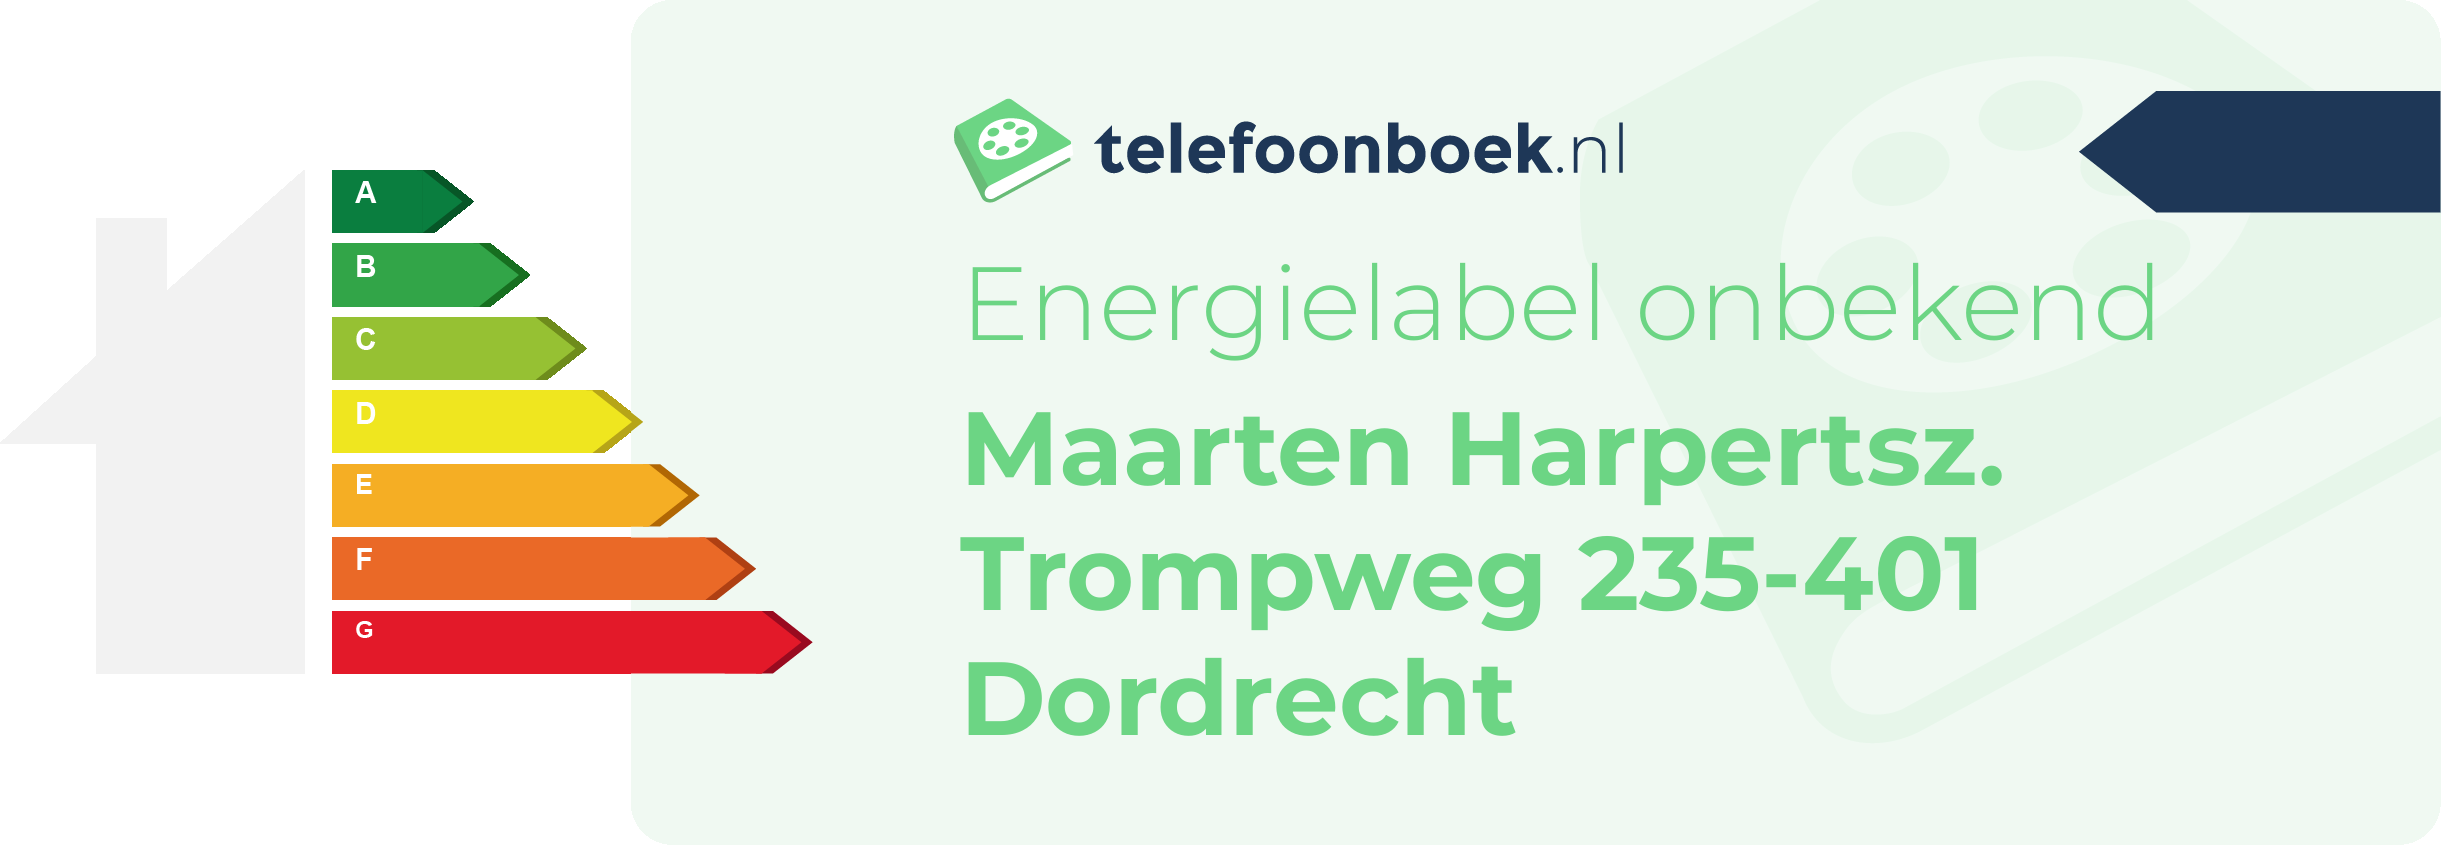 Energielabel Maarten Harpertsz. Trompweg 235-401 Dordrecht